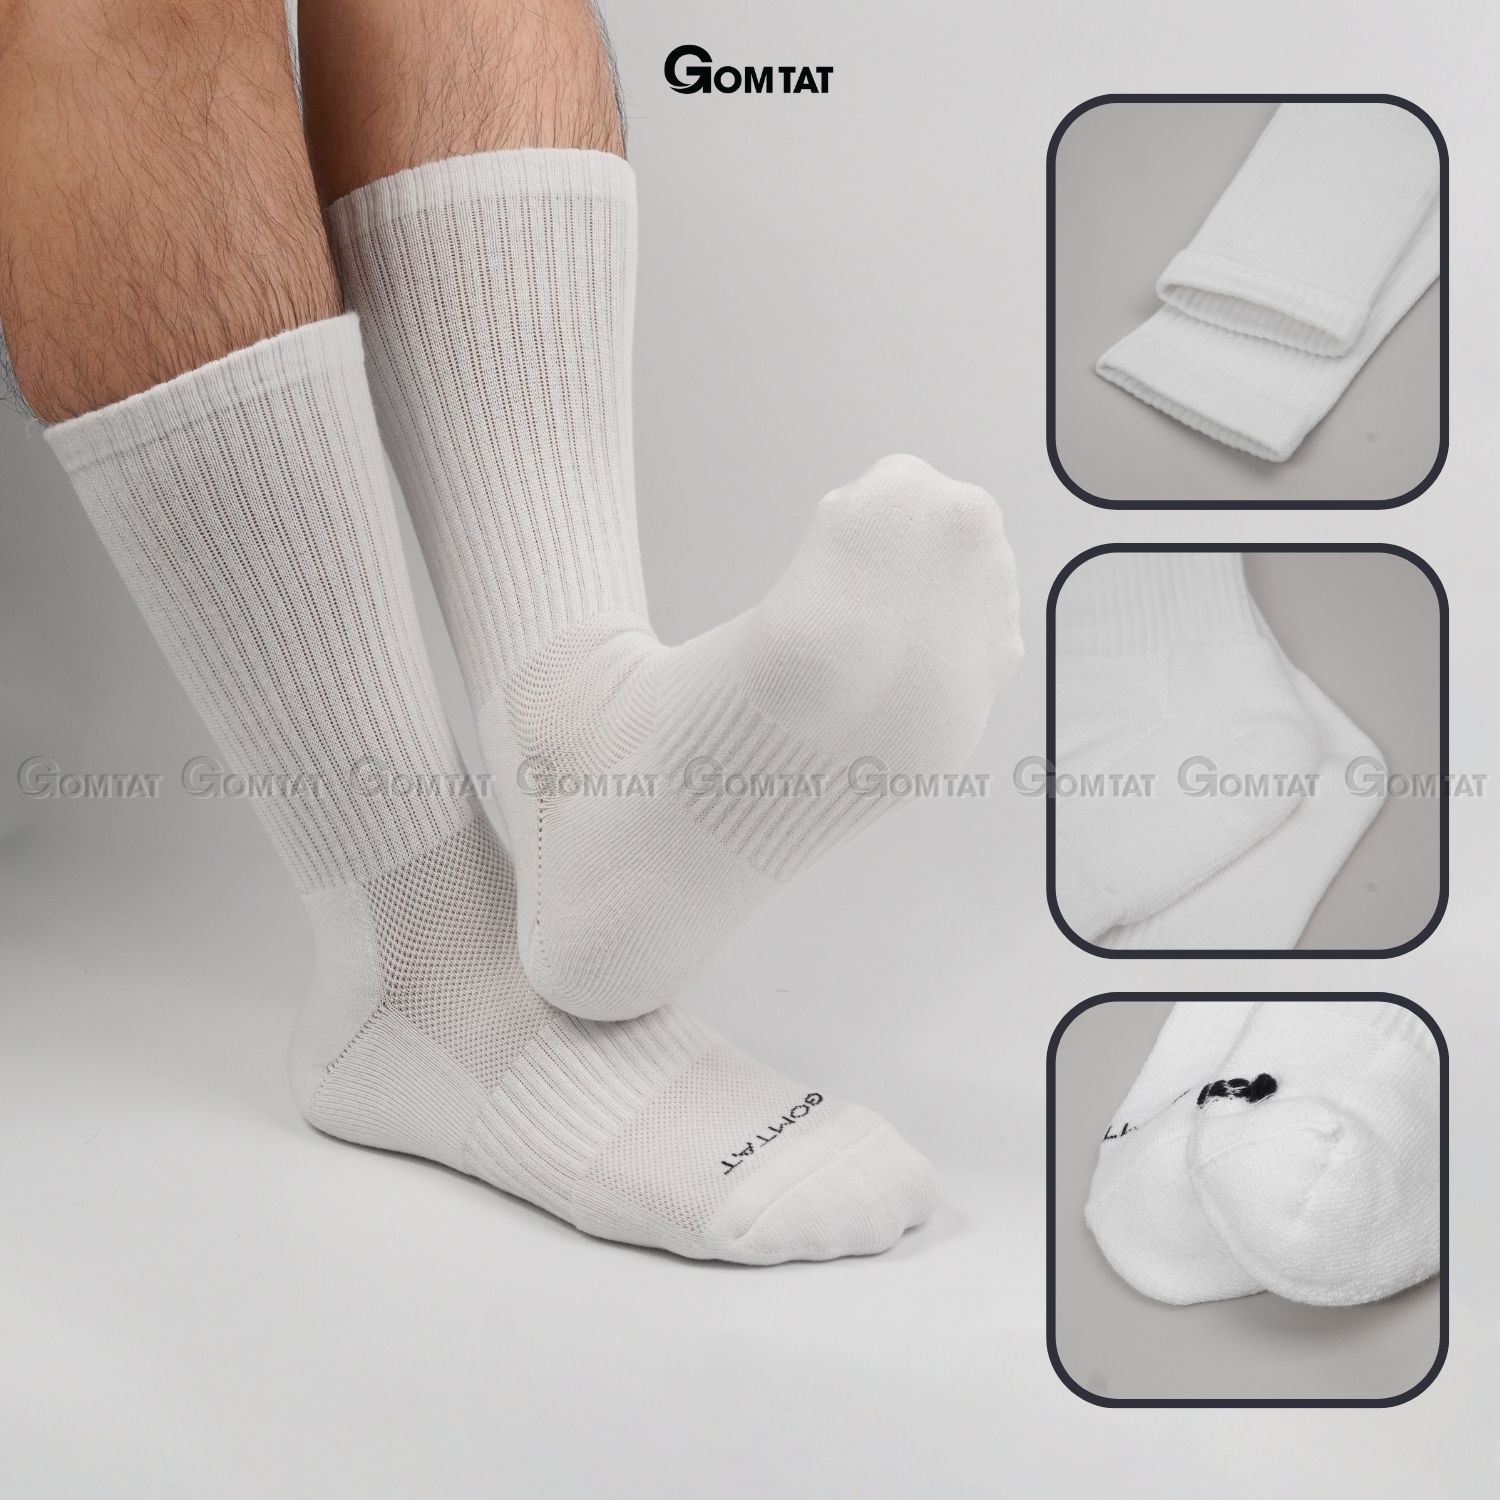 Combo 10 đôi vớ trắng GOMTAT nam nữ cổ cao, chất liệu cotton mềm mại, có lót xù êm chân - NGAN-STA-5009-TRANG-CB10